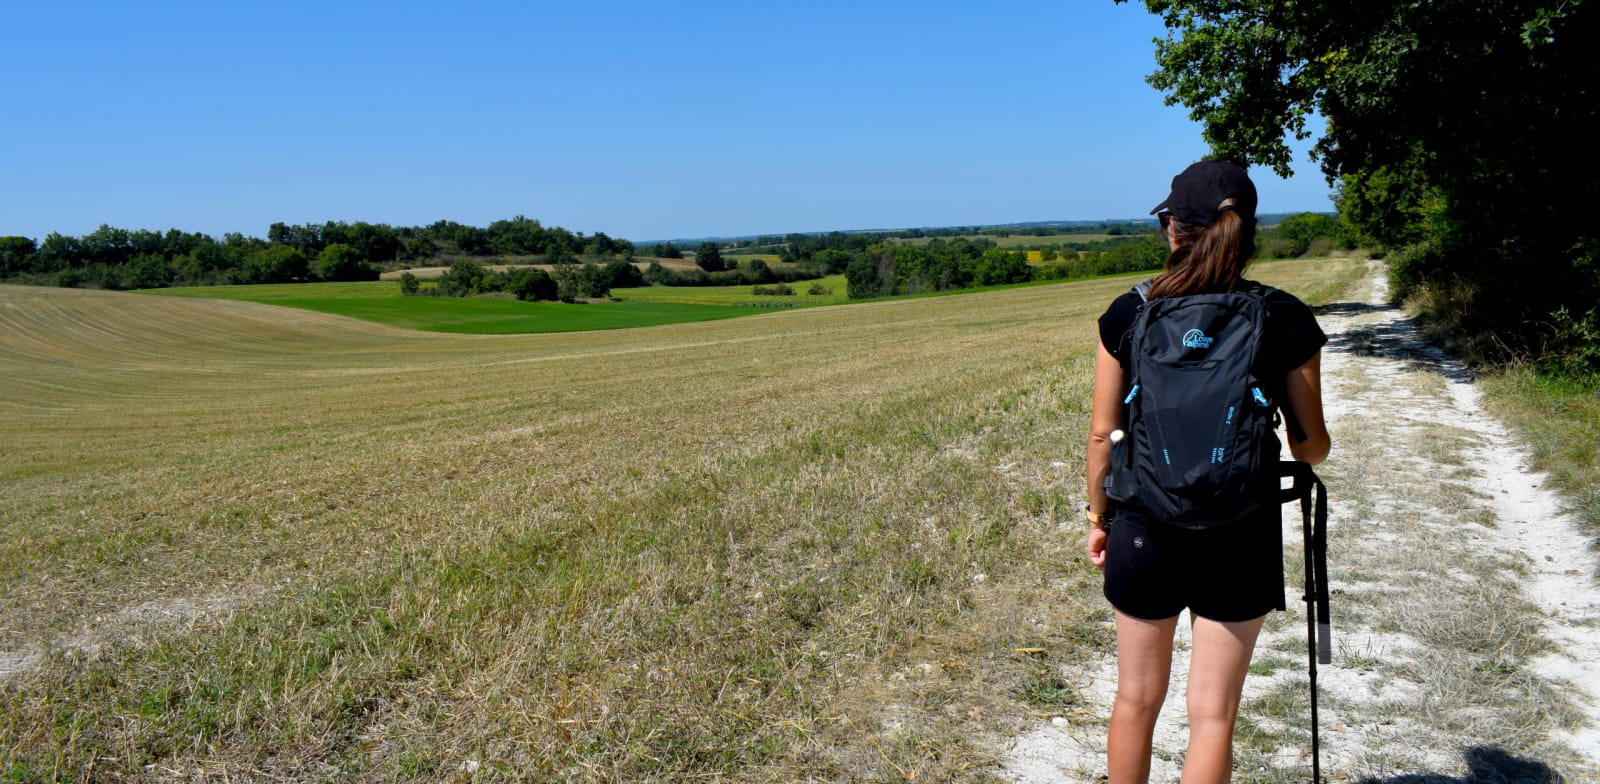 Wandelaar op weg naar Santiago de Compostela in Quercy Blanc